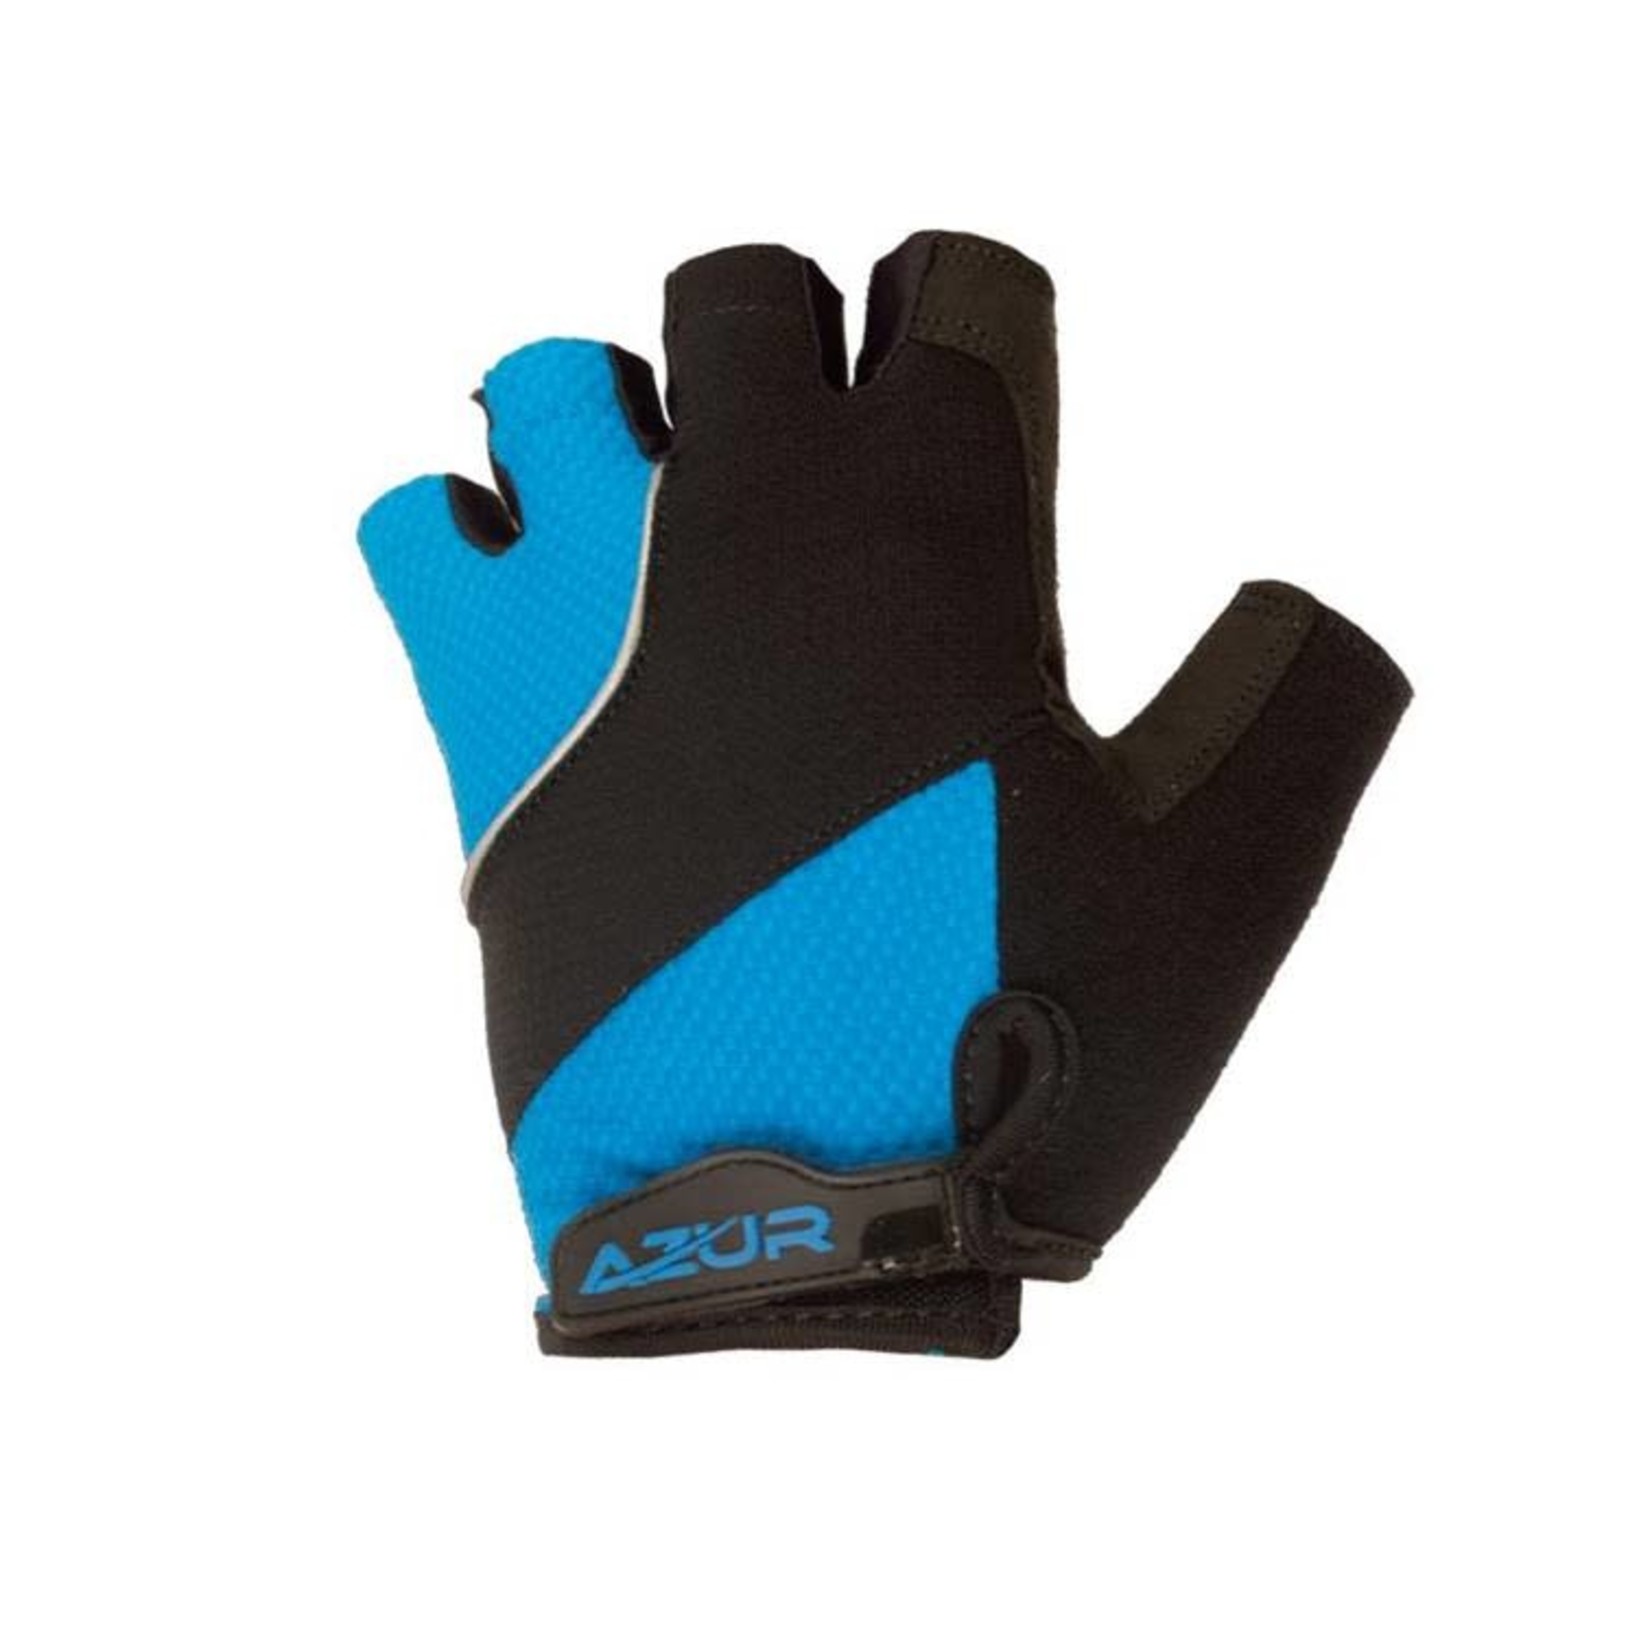 Azur S6 Short Finger Gloves Blue